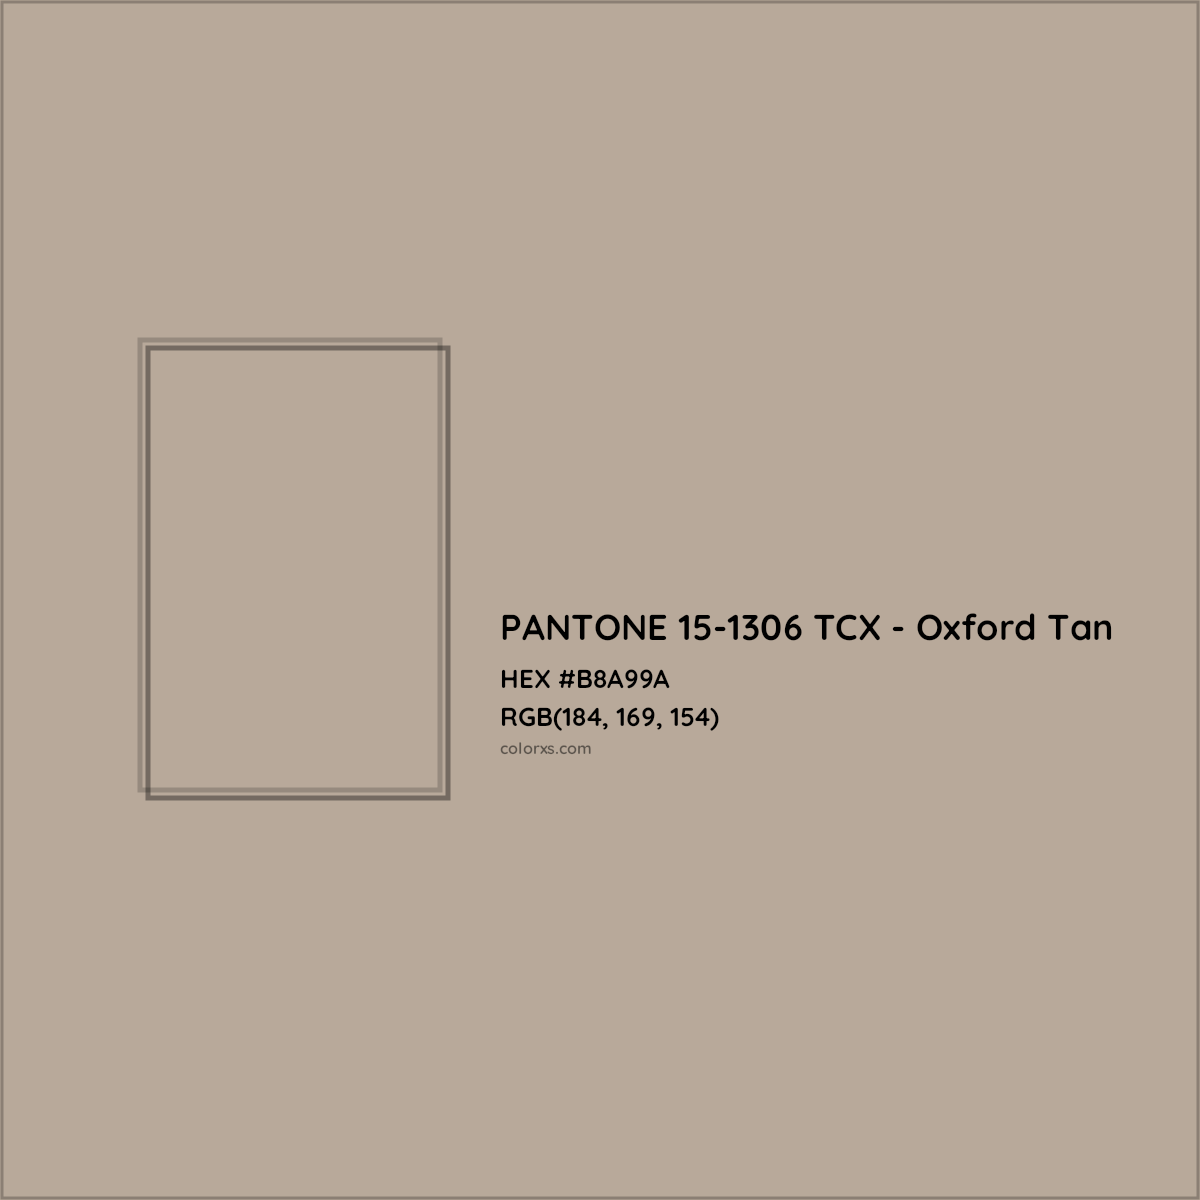 HEX #B8A99A PANTONE 15-1306 TCX - Oxford Tan CMS Pantone TCX - Color Code